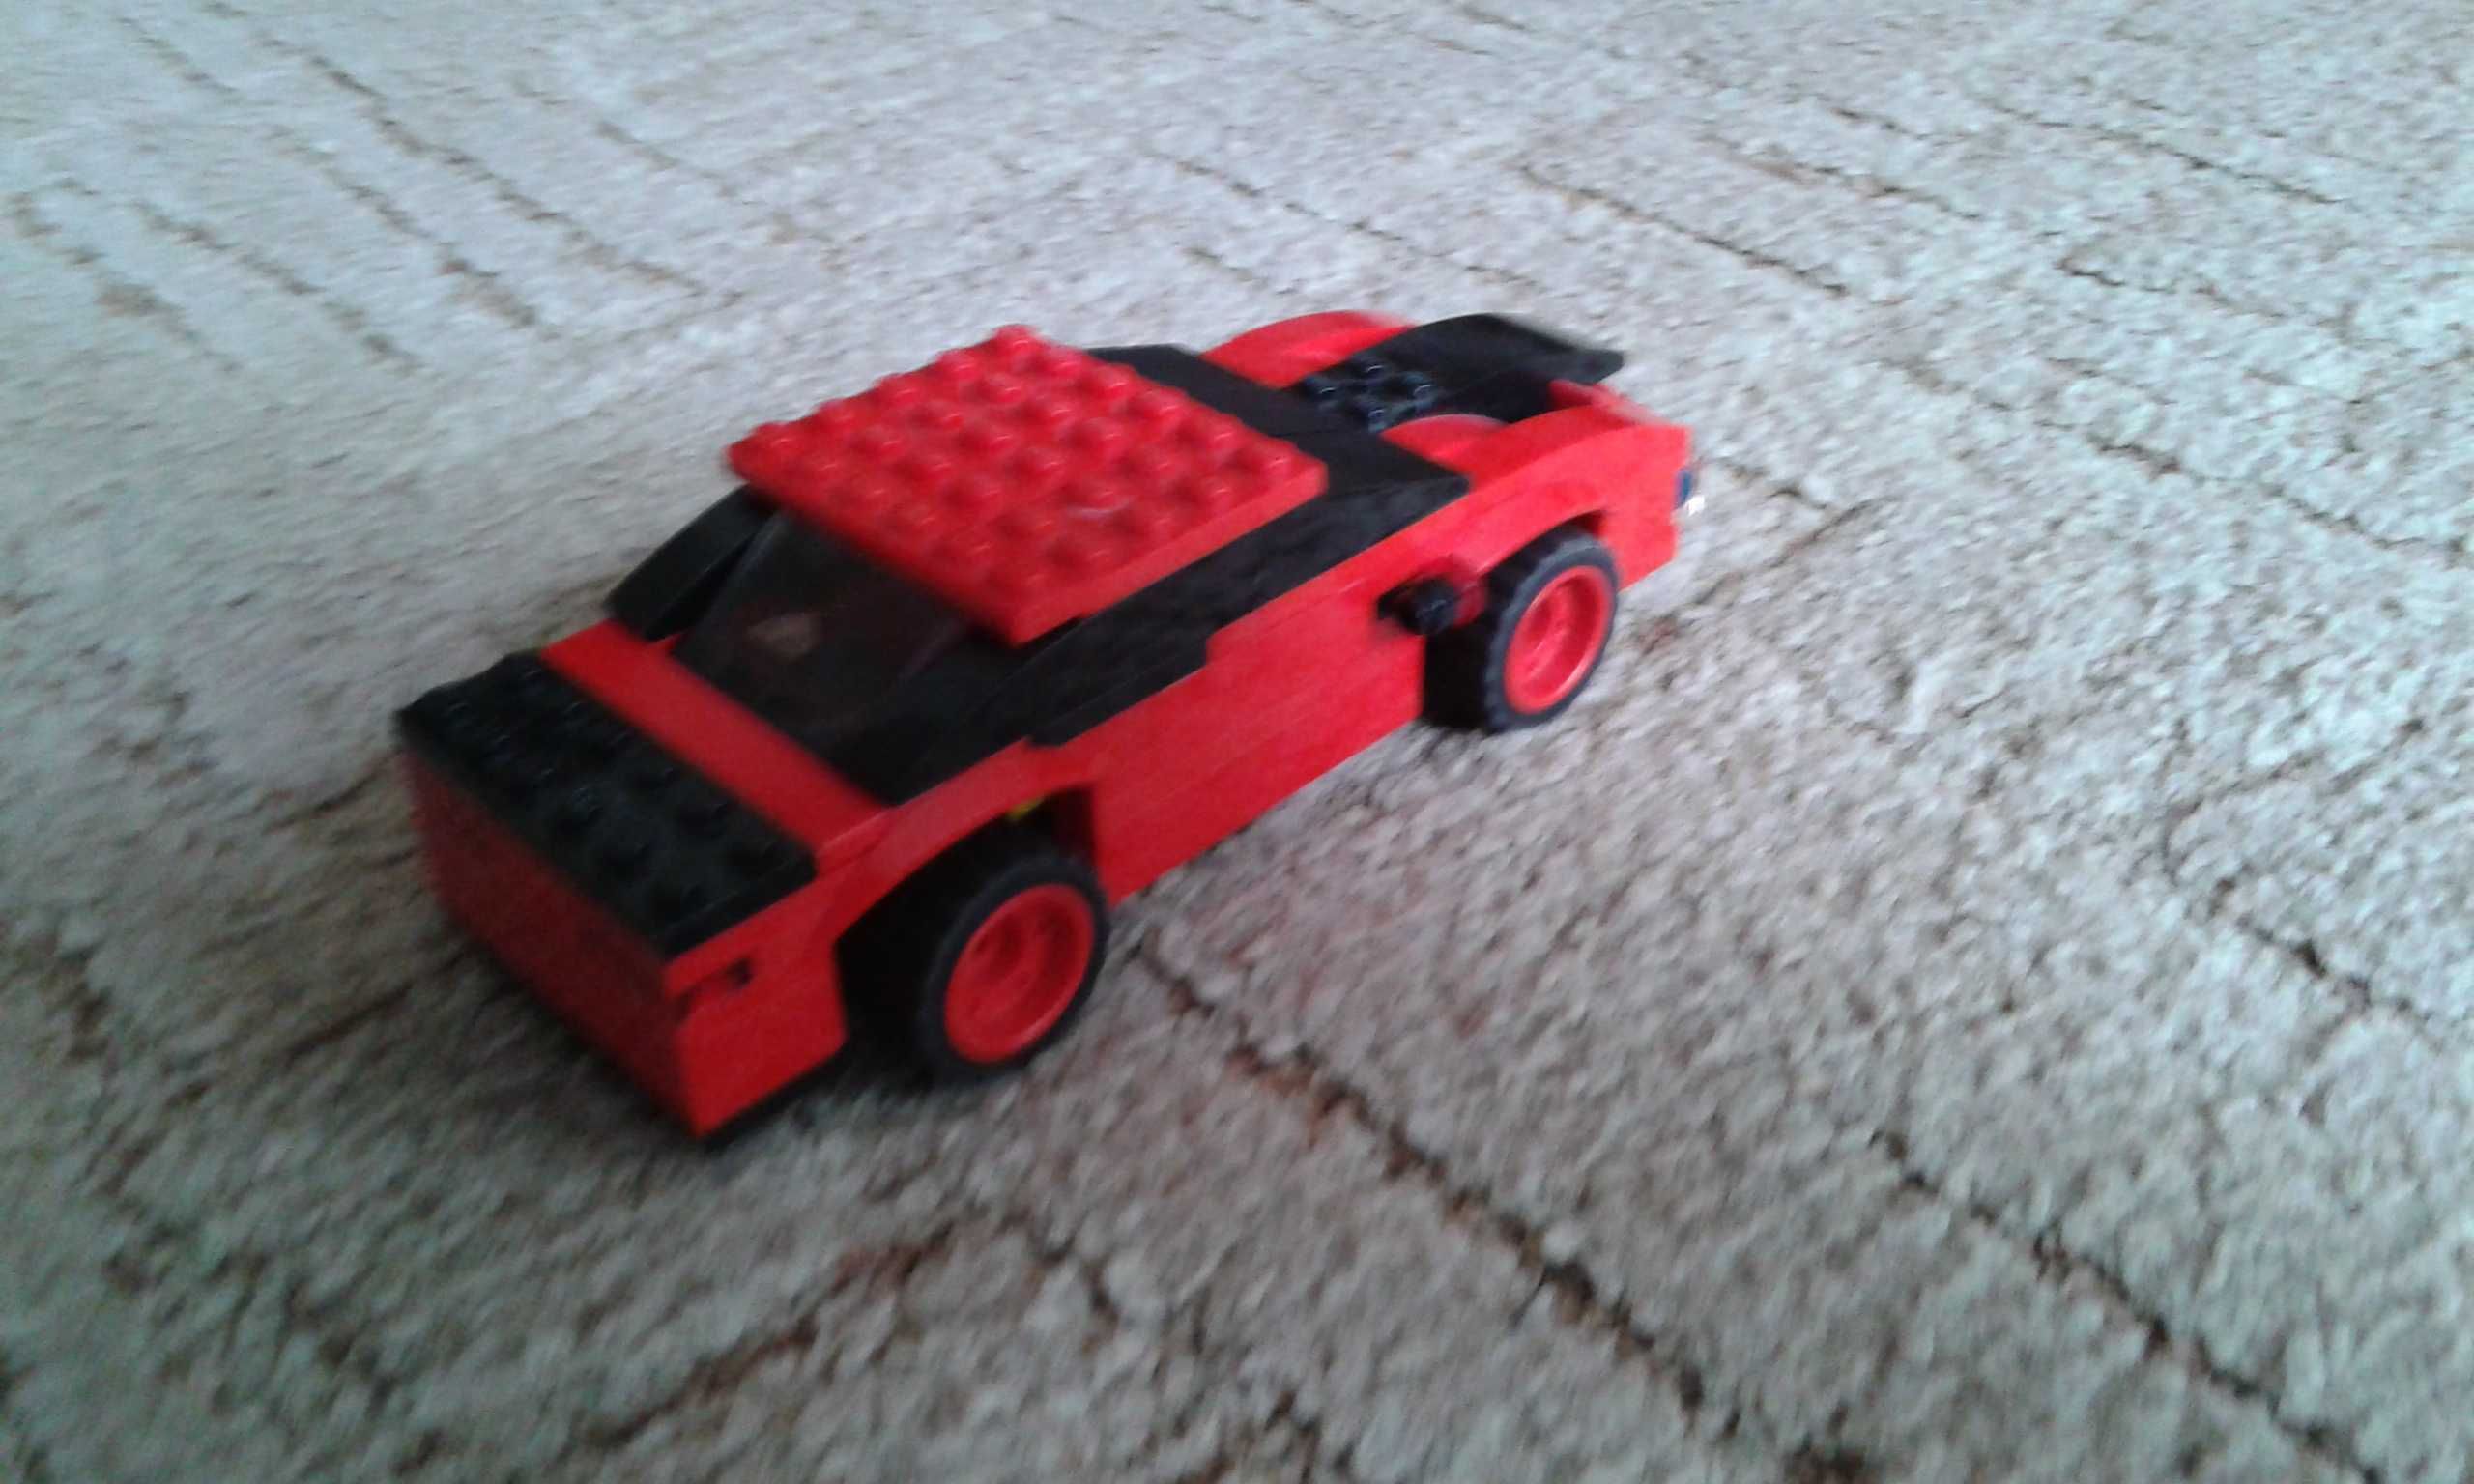 Samochód LEGO własnego projektu